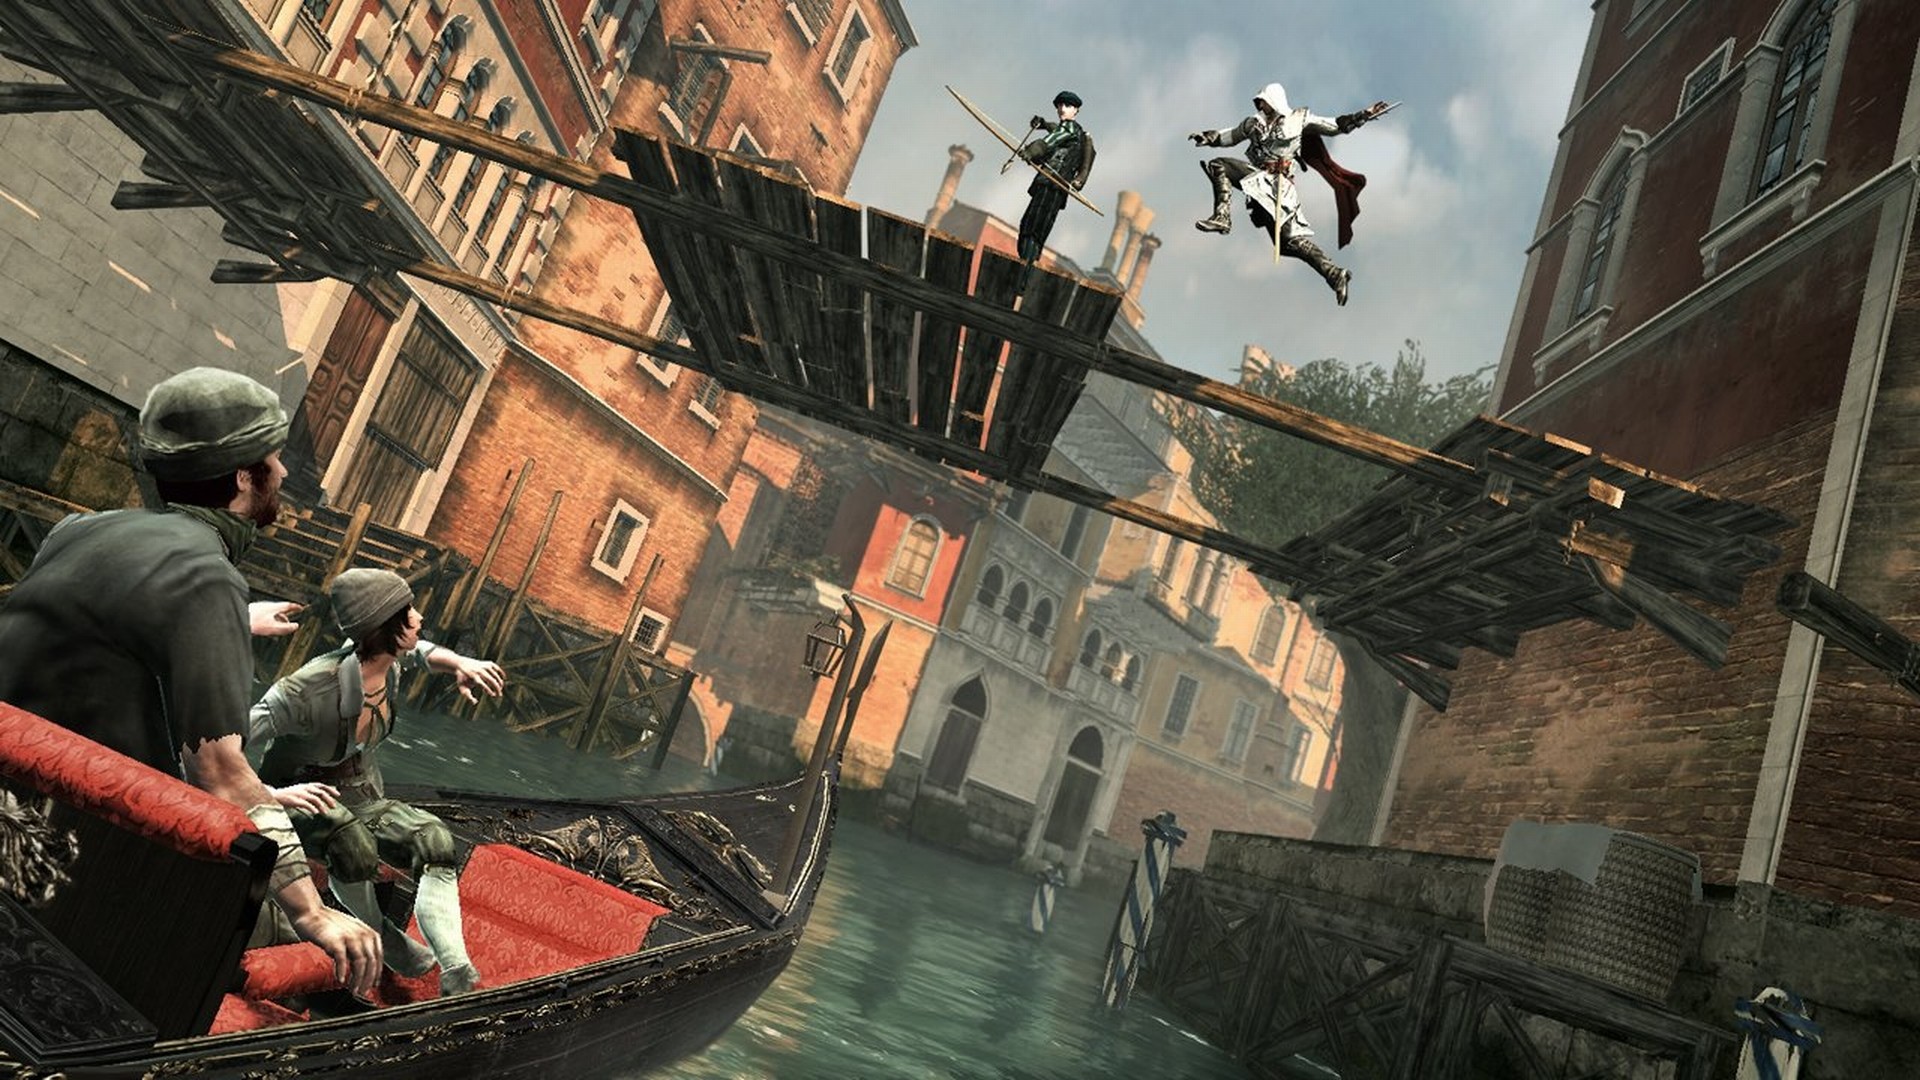 1920x1080 Assassin's Creed II HD Wallpaper | Hintergrund |  | ID:144809 -  Wallpaper Abyss